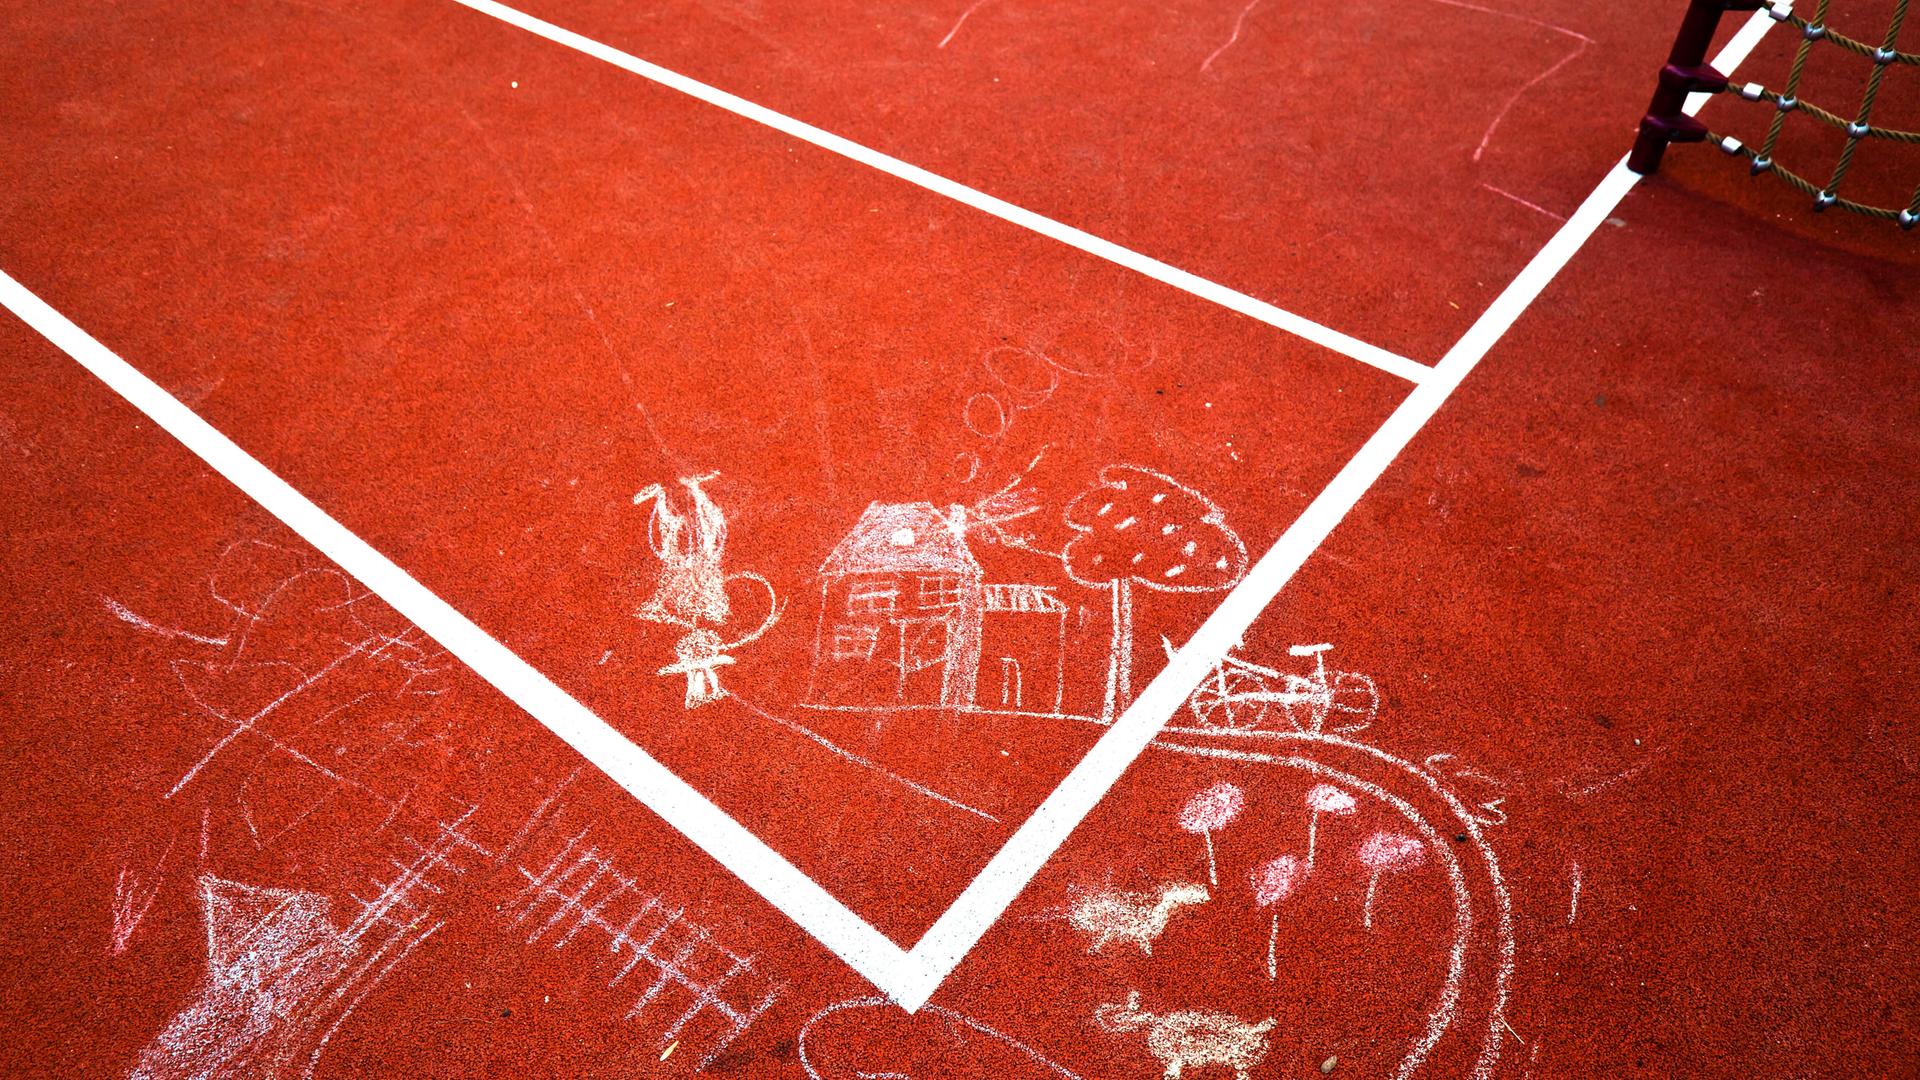 Kinderzeichnungen aus Kreide sind auf einen Tartanplatz gemalt.